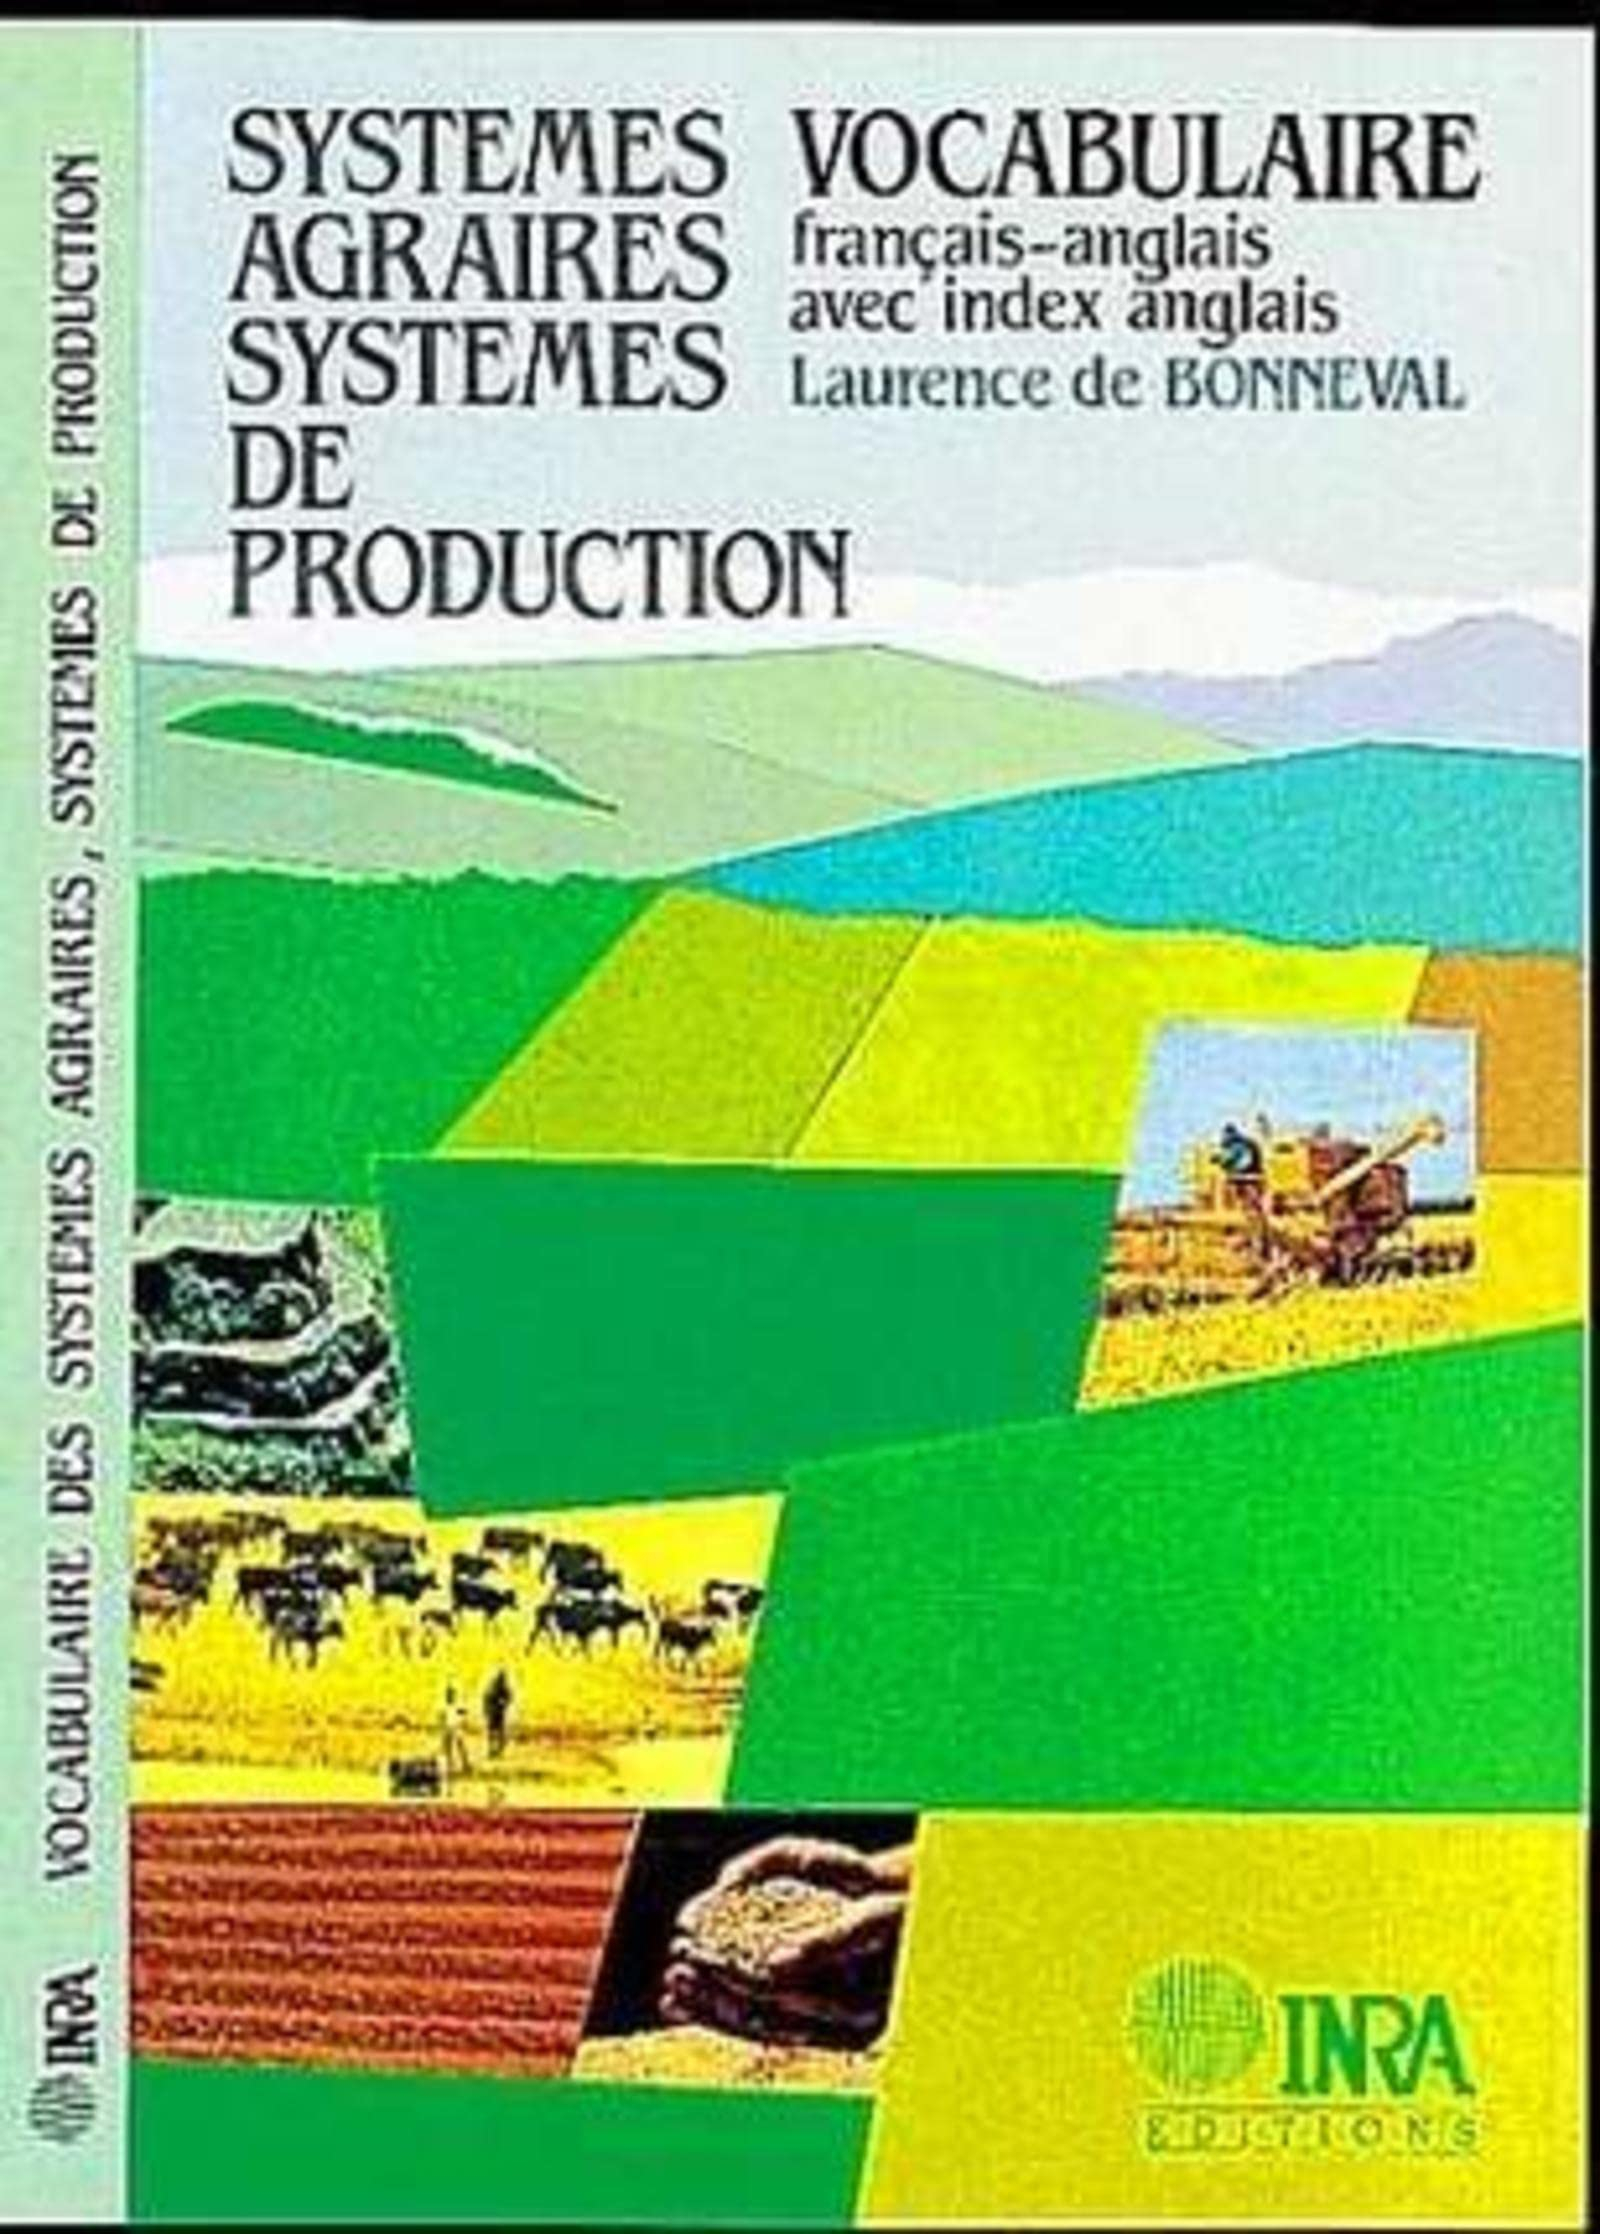 Systèmes agraires, systèmes de production : systèmes de culture, systèmes d'élevage, fonctionnement 